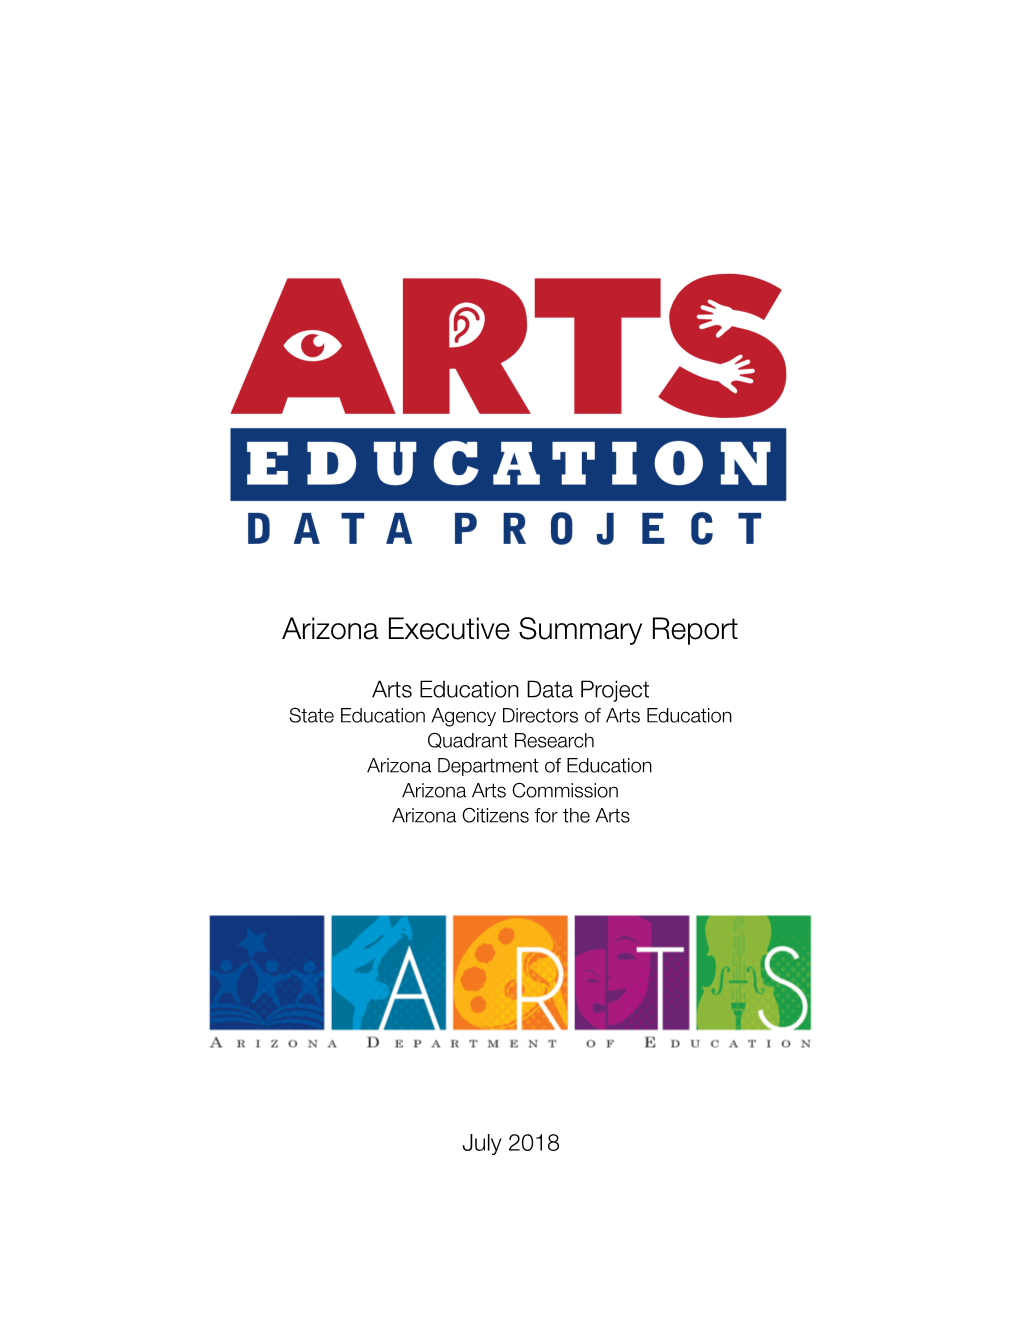 Arts Education Data Project: Arizona Executive Summary Report